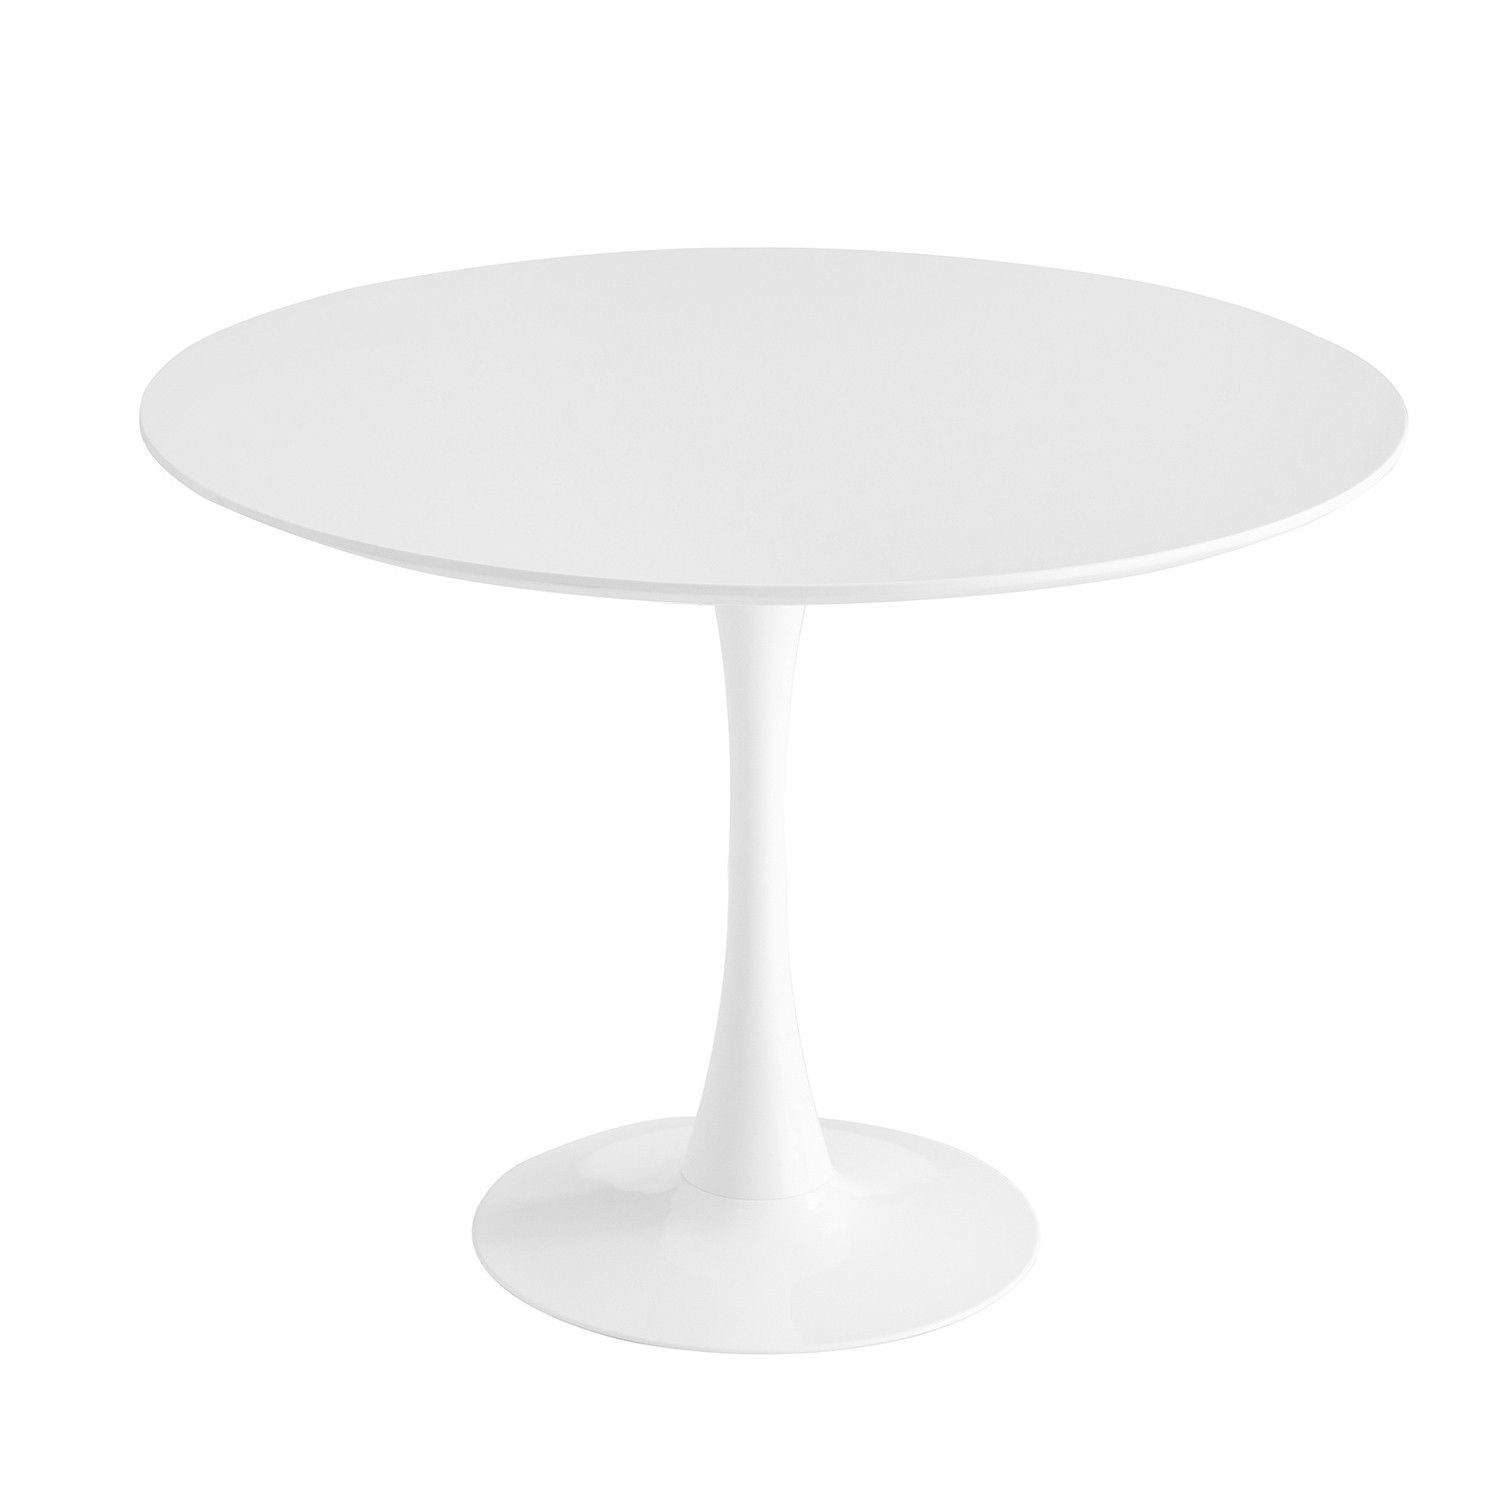 TABLE RONDE IBIZA WHITE Ø90 CM